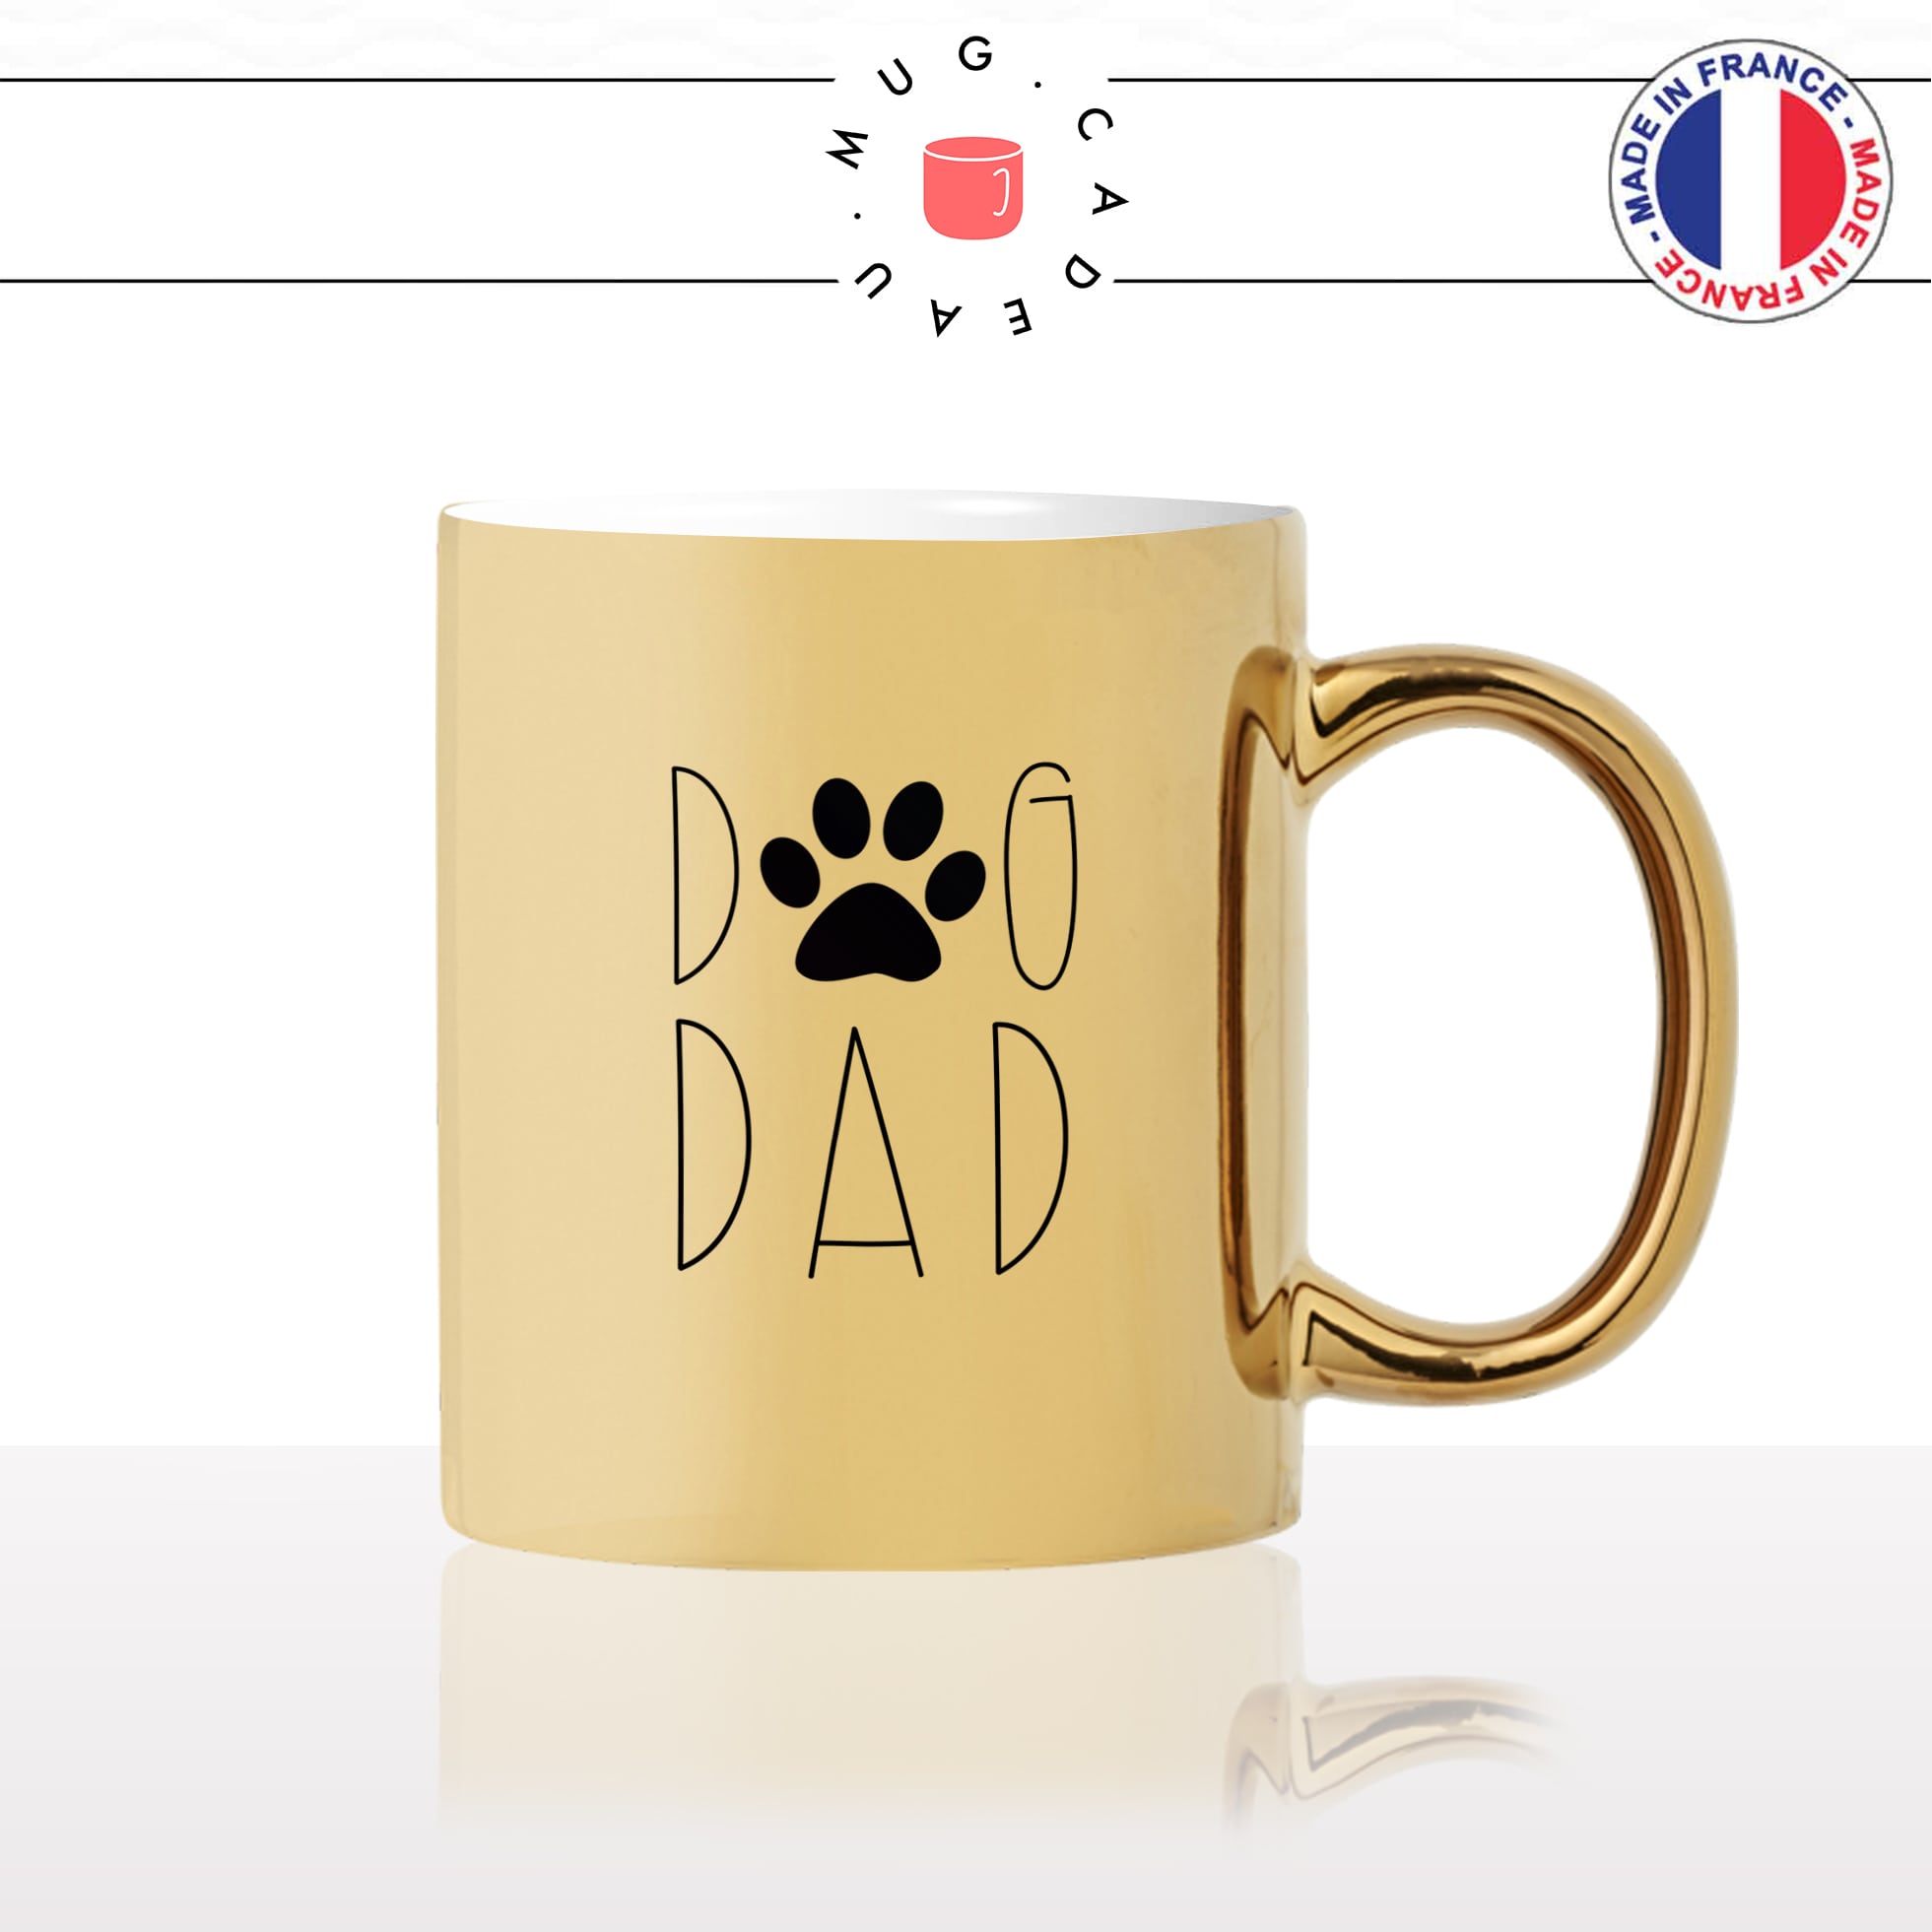 mug-tasse-or-doré-dog-dad-papa-chien-patte-amour-mignon-animal-chiot-noir-fun-café-thé-idée-cadeau-original-personnalisé-gold2-min